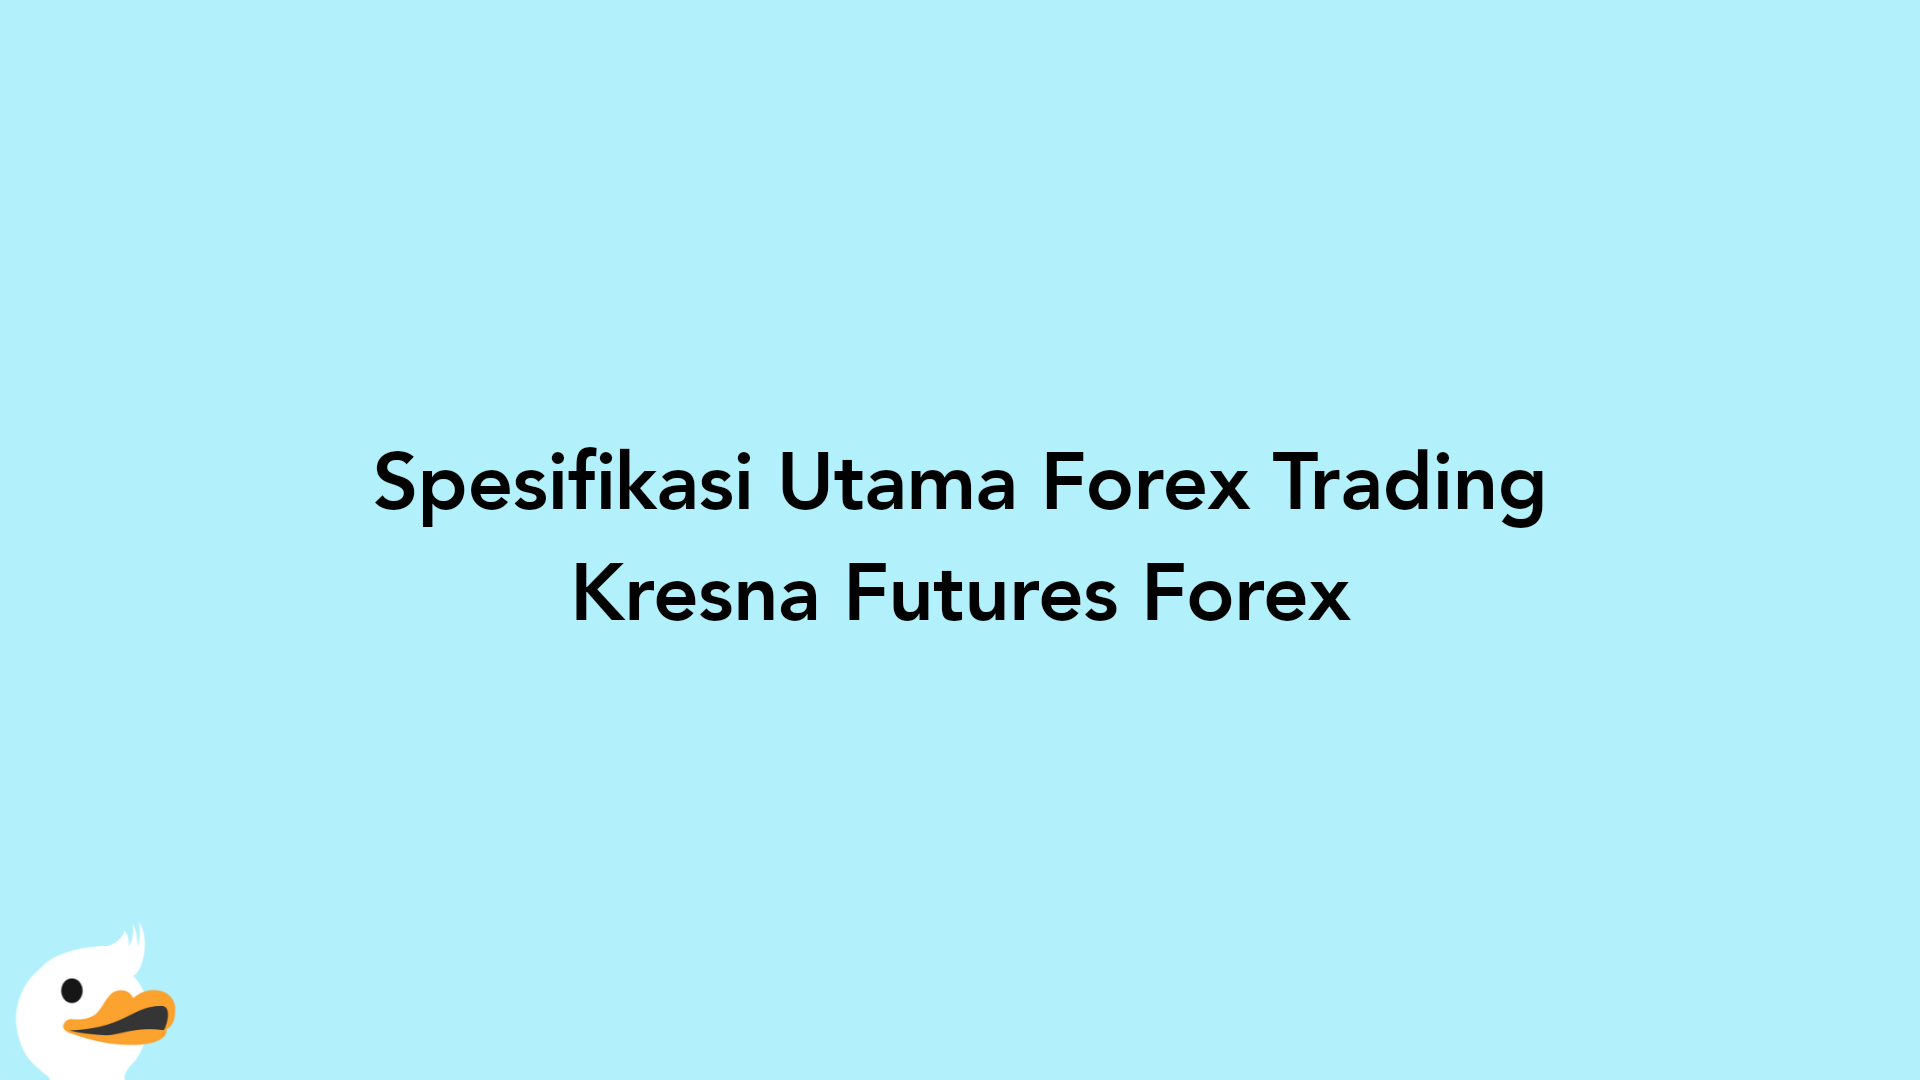 Spesifikasi Utama Forex Trading Kresna Futures Forex